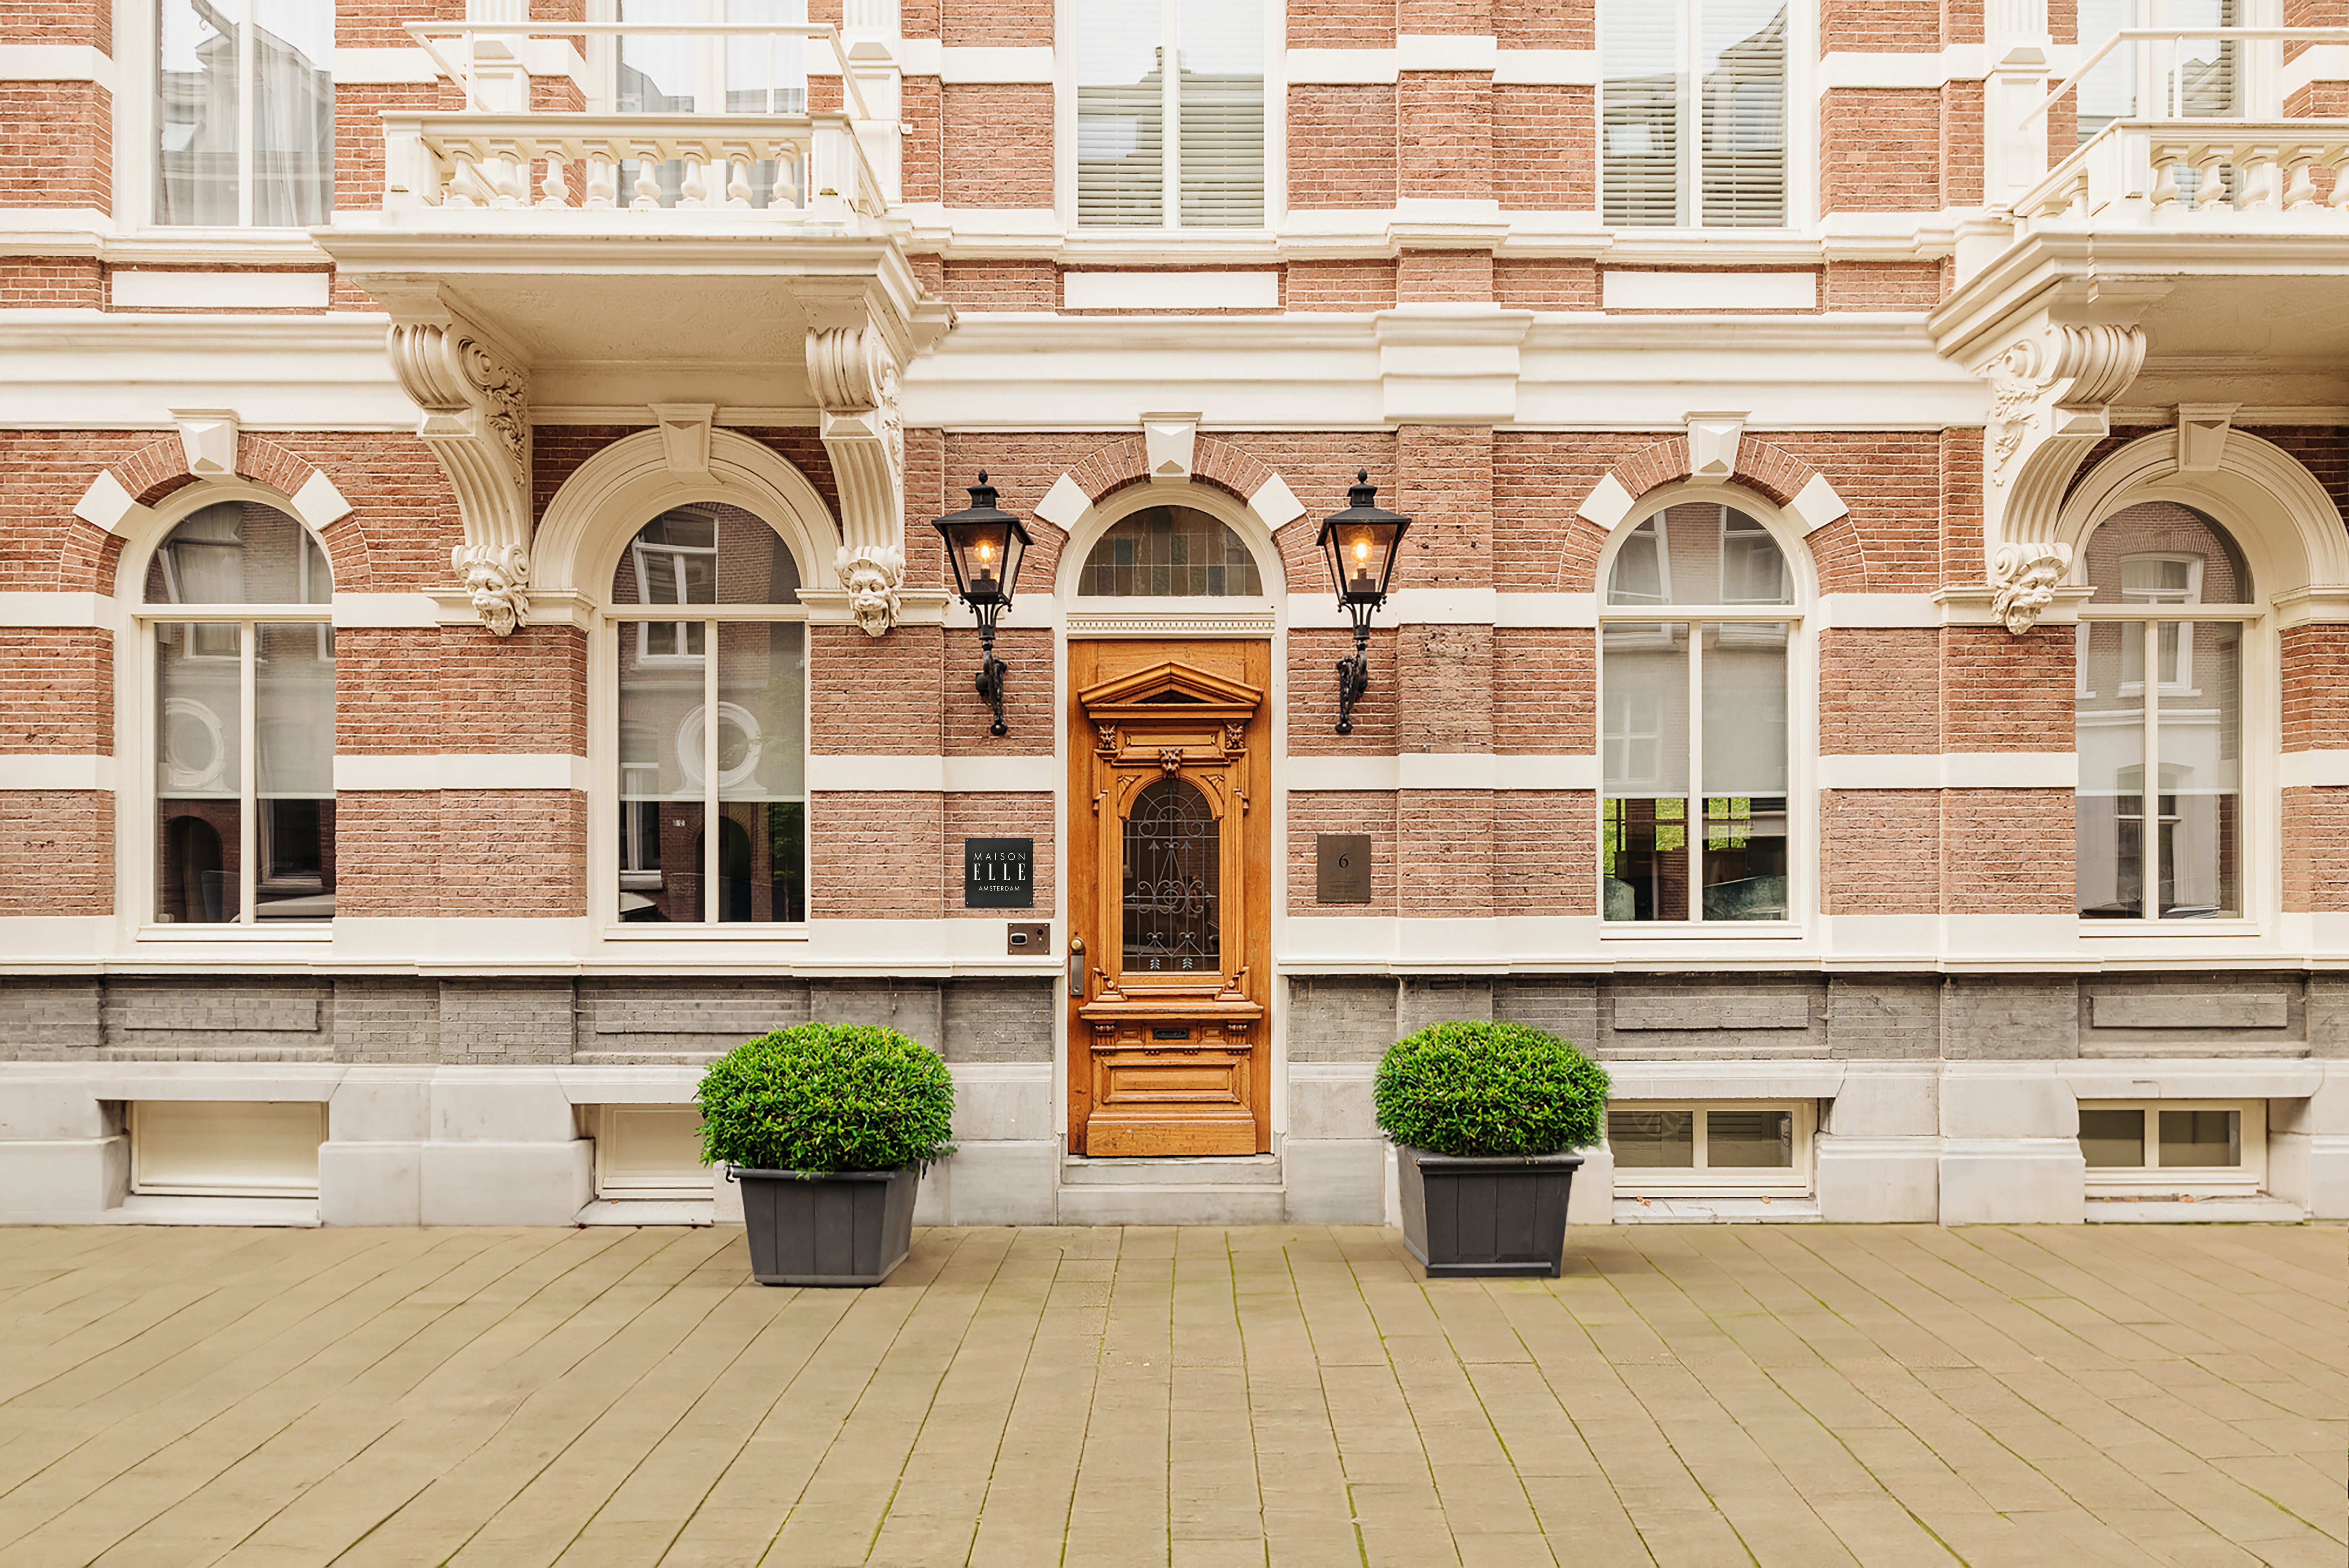 Maison Elle opent eerste vestiging buiten Frankrijk in Amsterdam